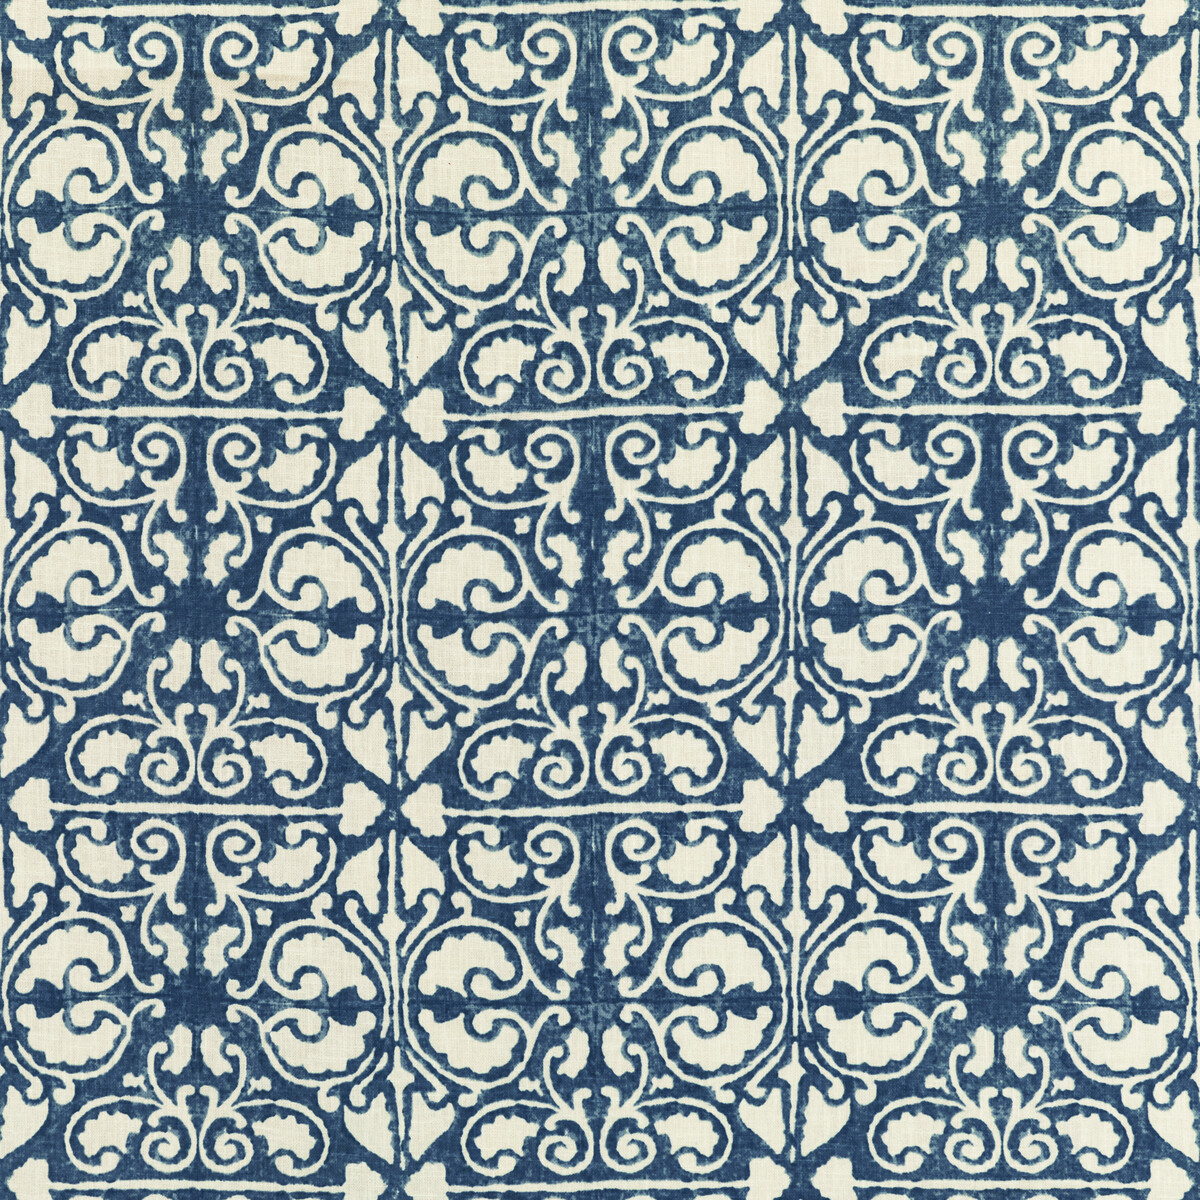 Kravet Basics Agra Tile.50.0 Kravet Basics Multipurpose Fabric in Agra Tile-50/Indigo/White/Dark Blue